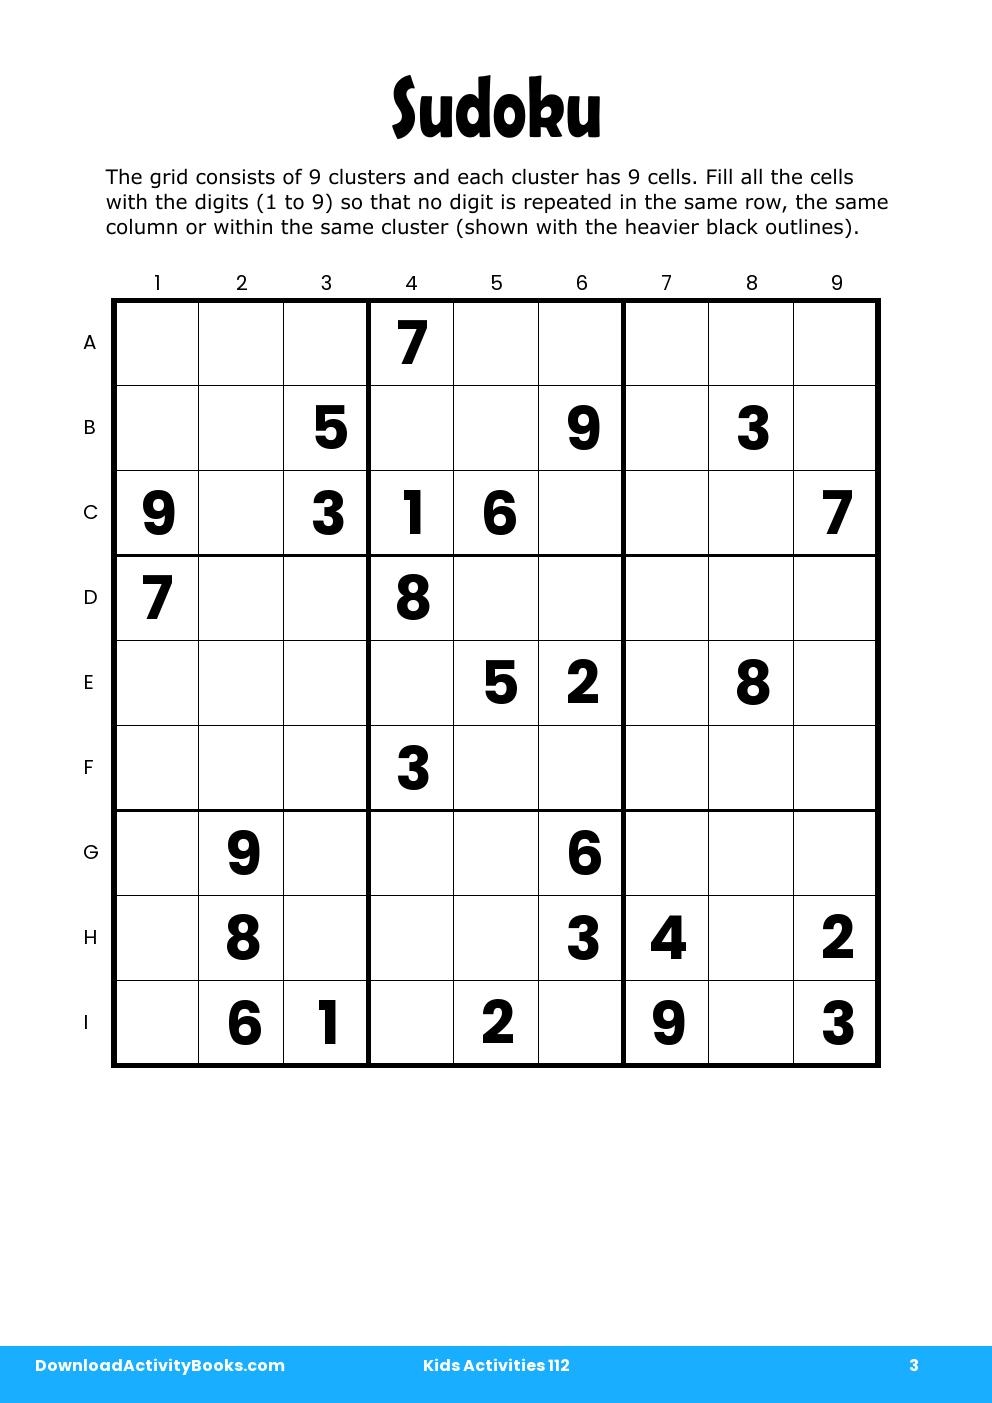 Sudoku in Kids Activities 112